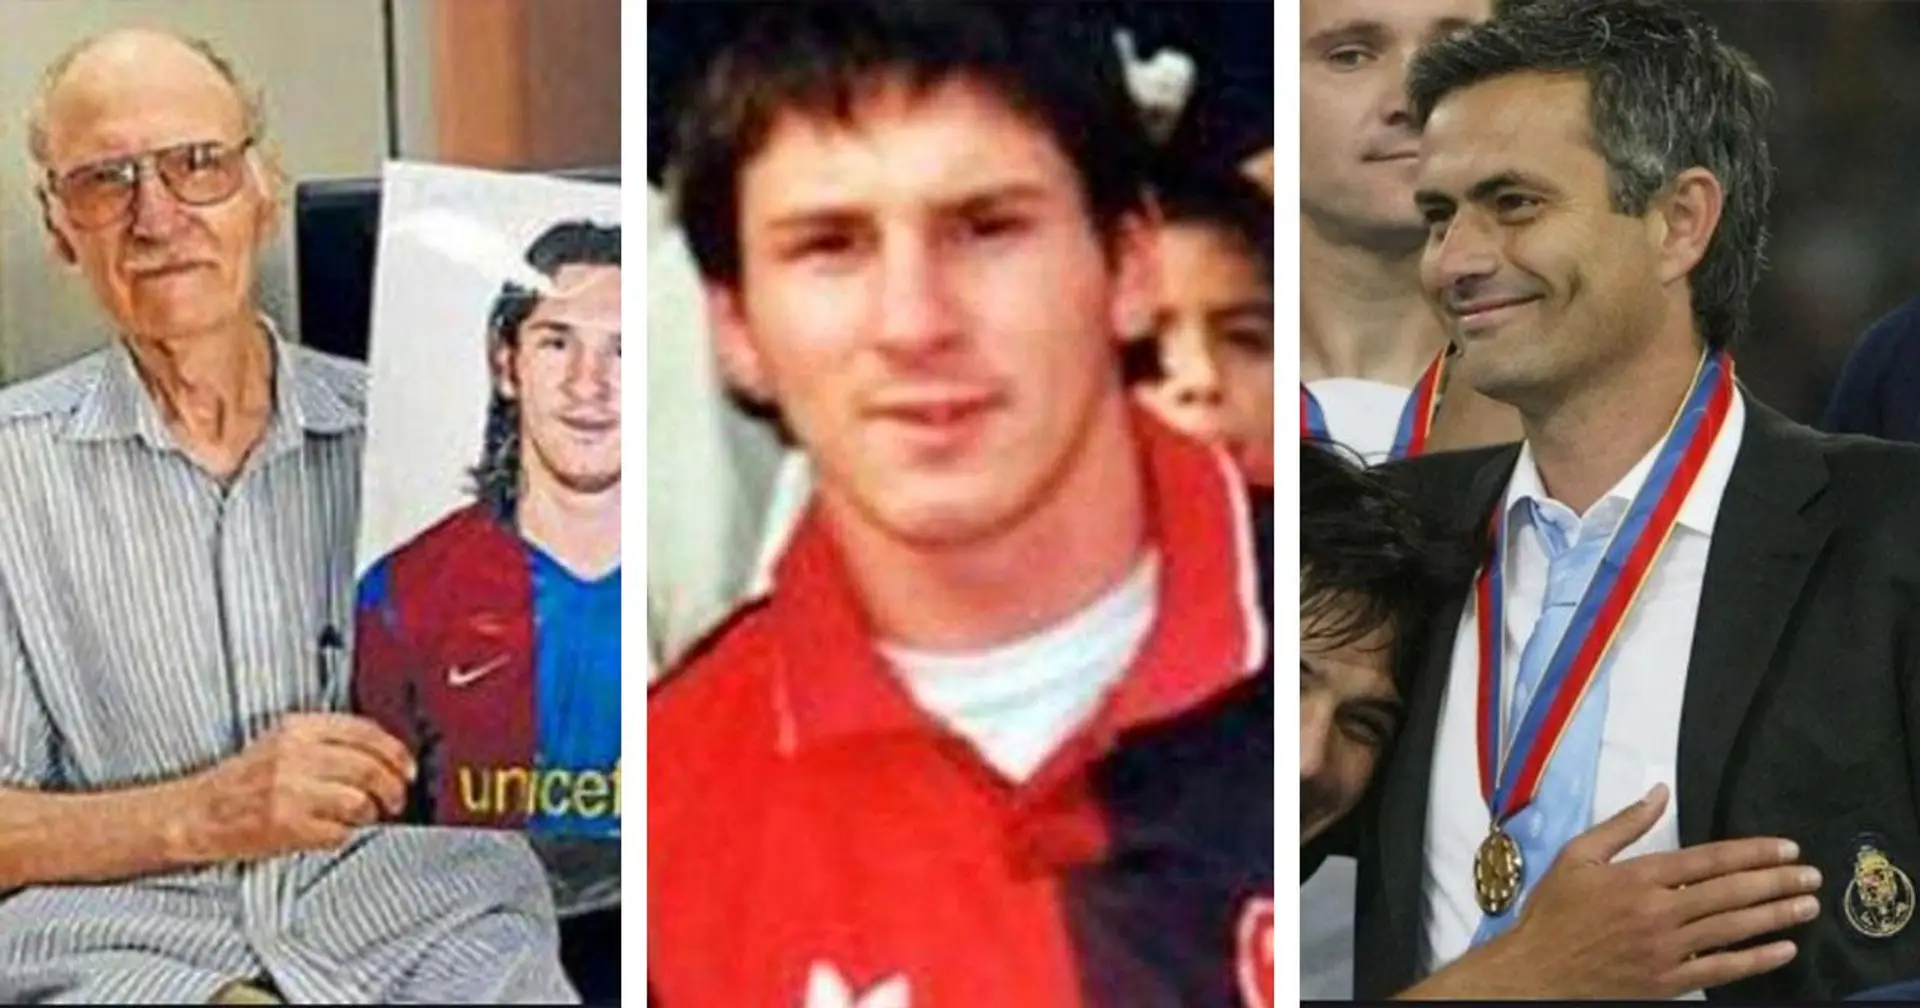 Des racines italiennes, rejoignant Newell à 5 ans, les débuts au Barça contre l'équipe de Mourinho: quel fait à propos de Messi est un mensonge? On vous donne la réponse